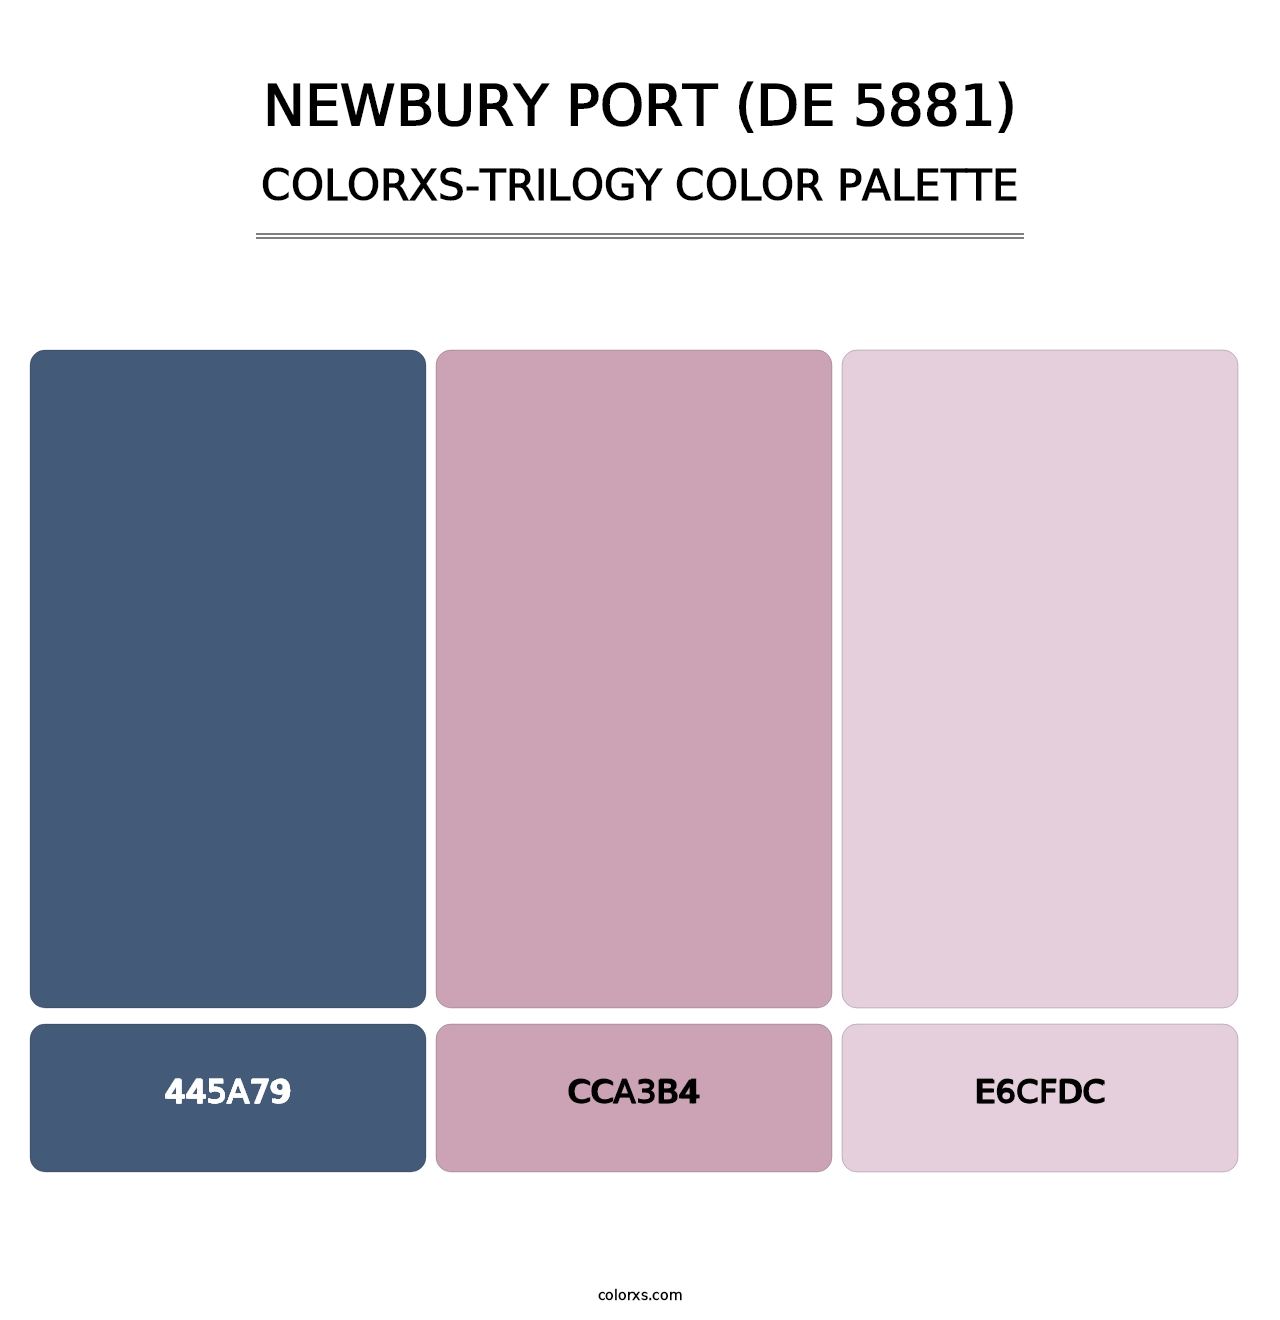 Newbury Port (DE 5881) - Colorxs Trilogy Palette